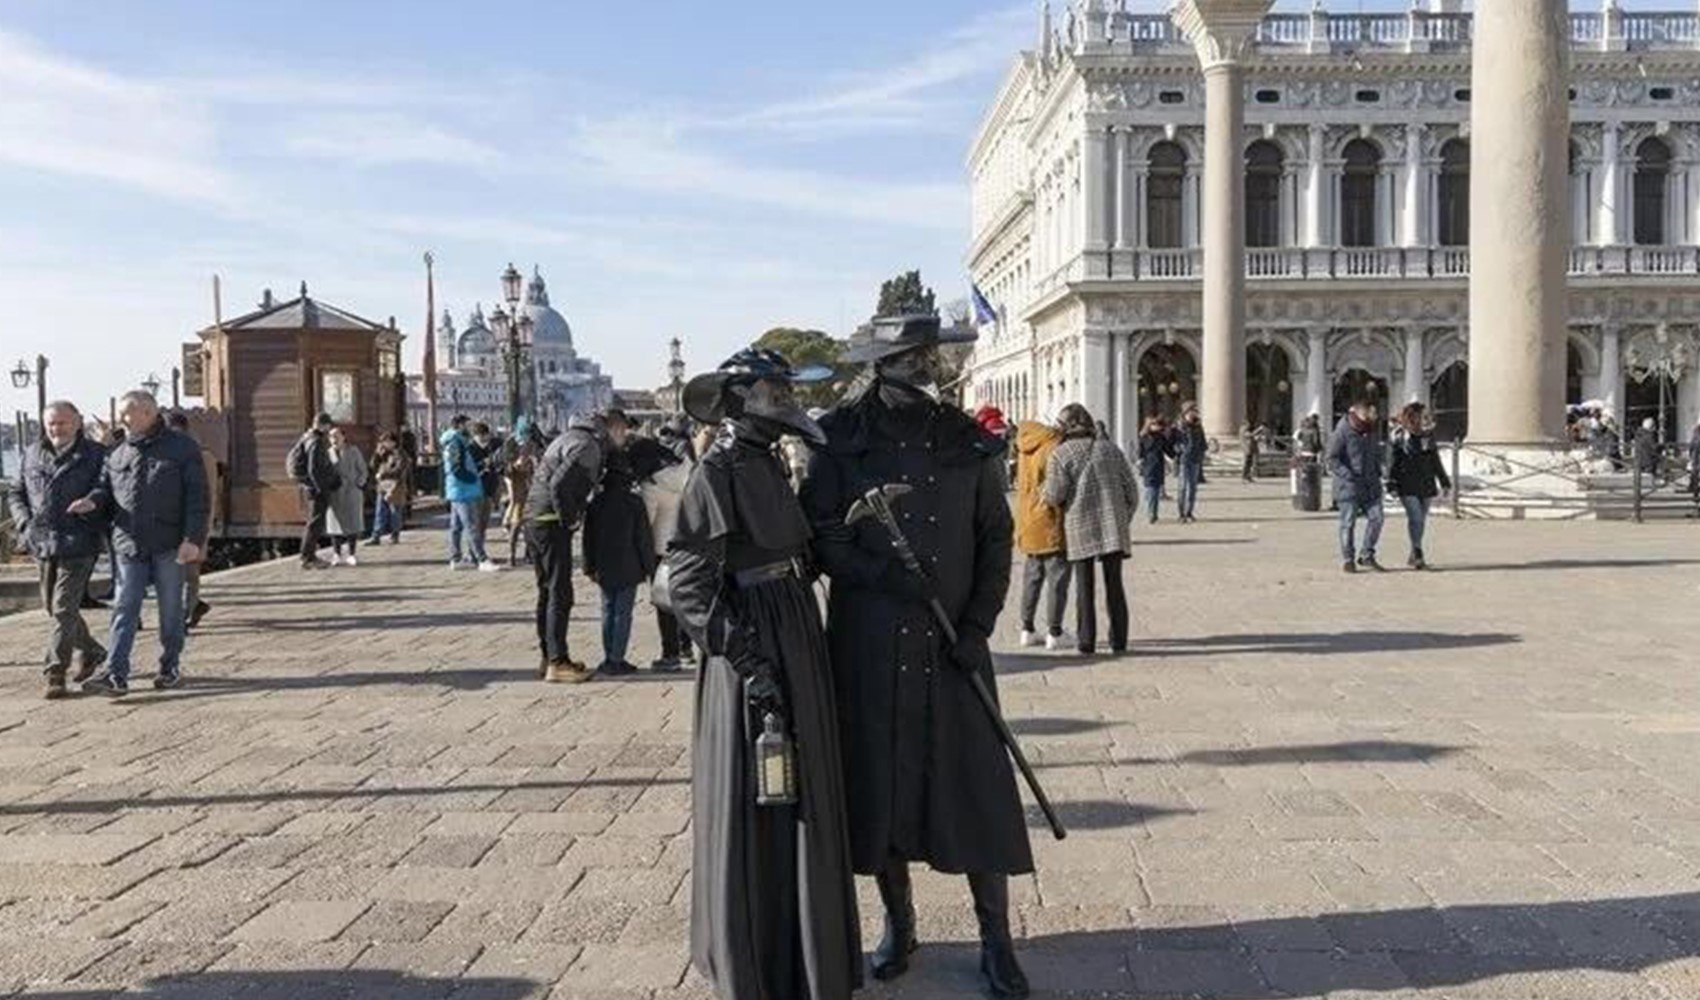 Venedik'e günübirlik gelen turistlerden giriş ücreti alınması uygulaması başlıyor